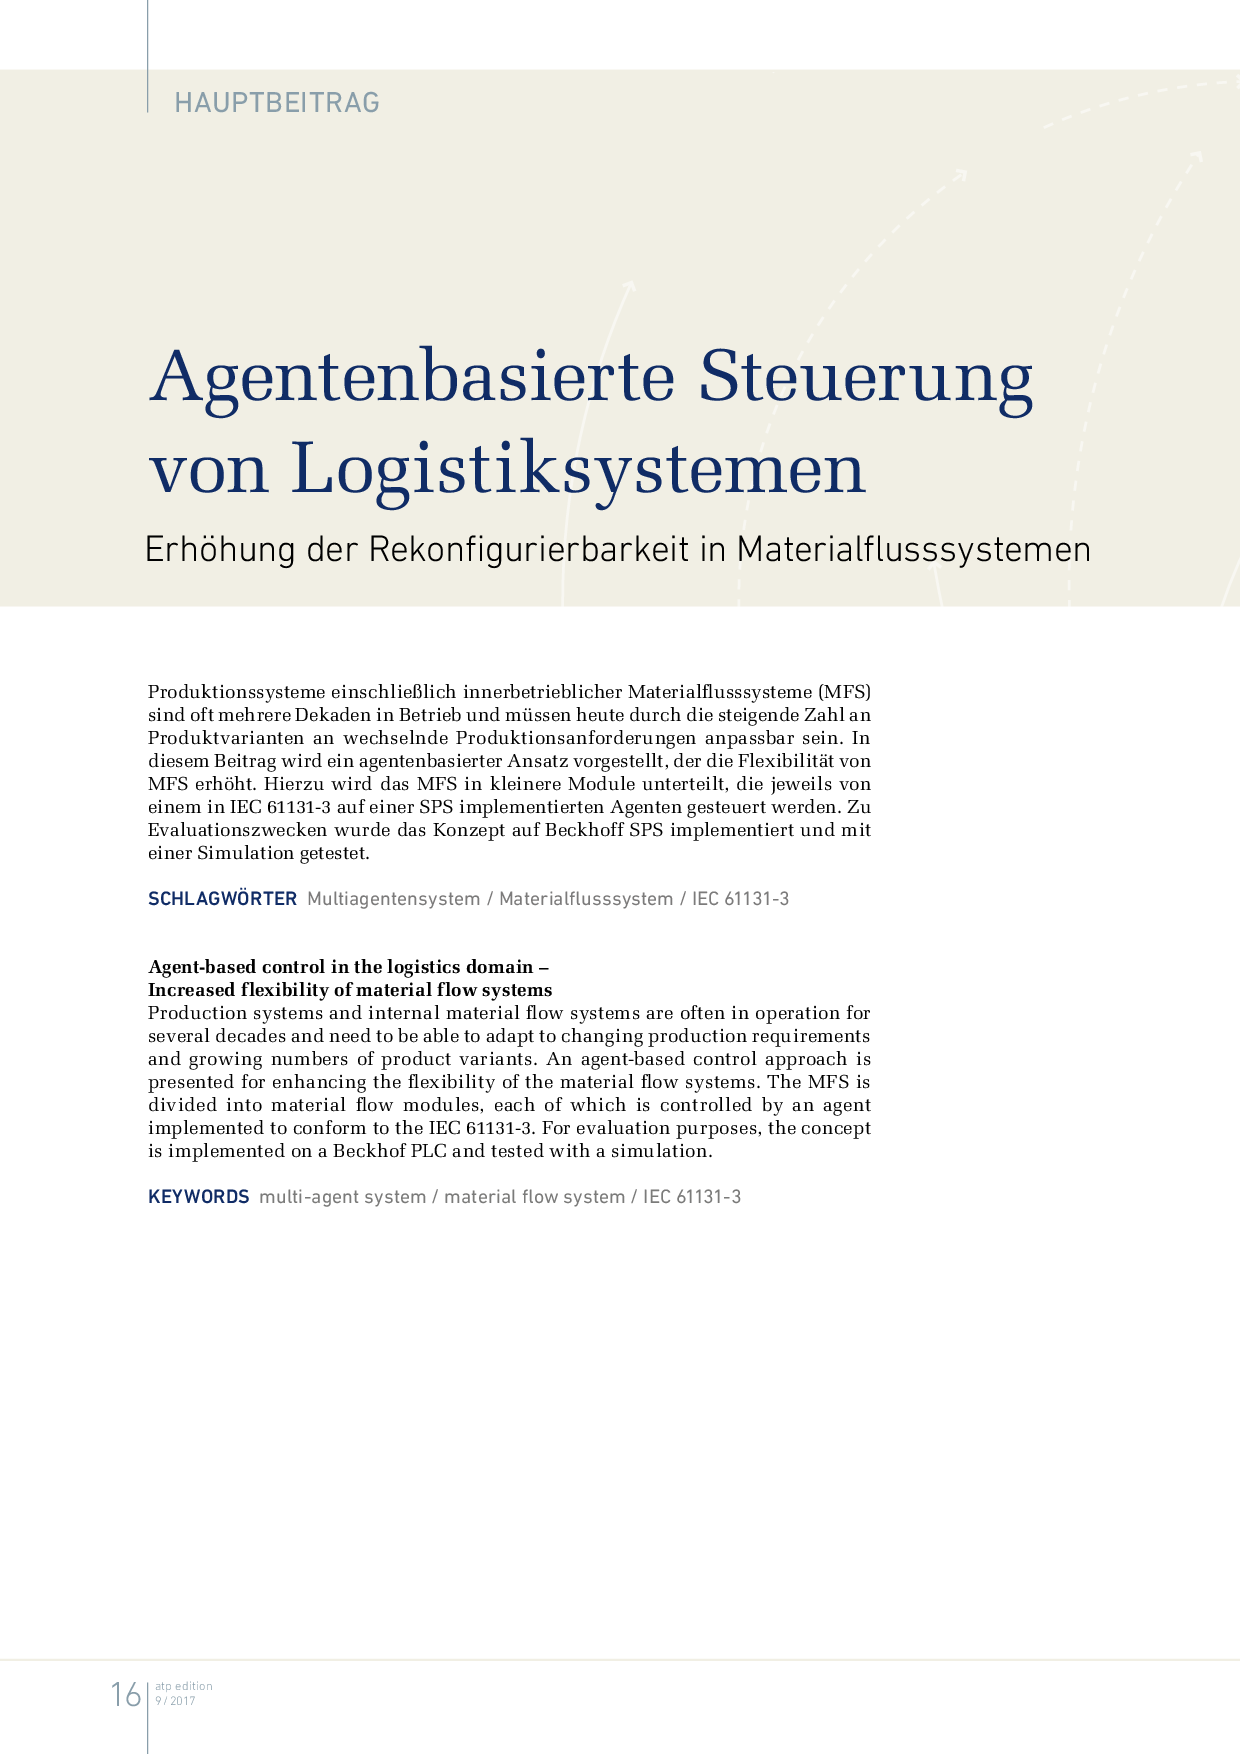 Agentenbasierte Steuerung von Logistiksystemen